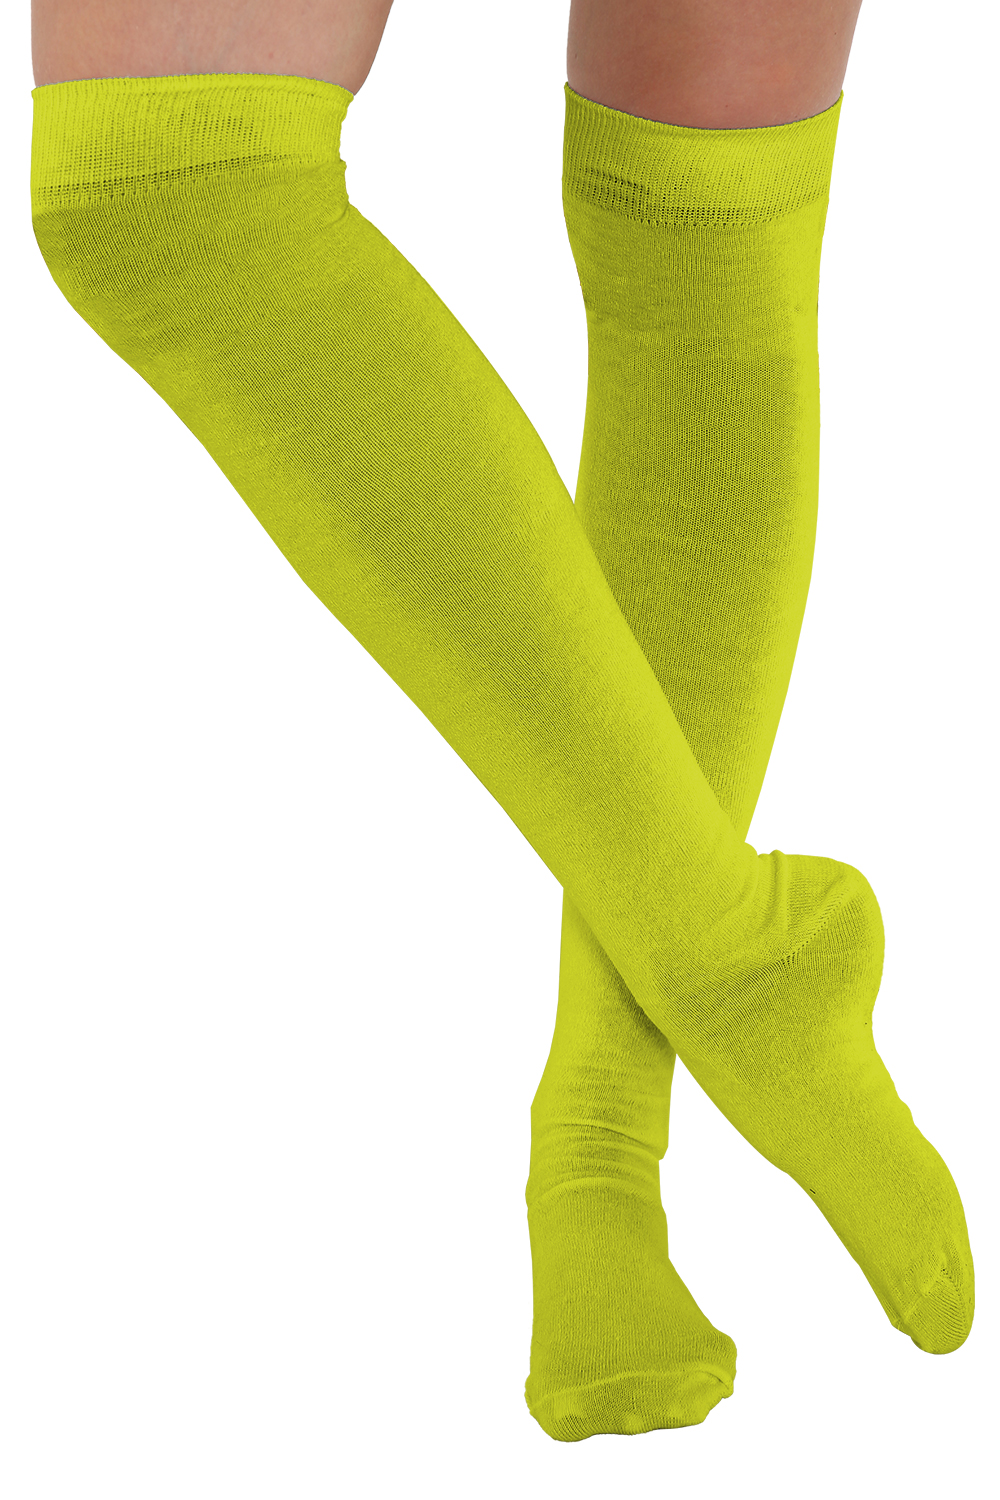 Crazy Chick Plain Neon Yellow OTK Socks (12 Pairs)